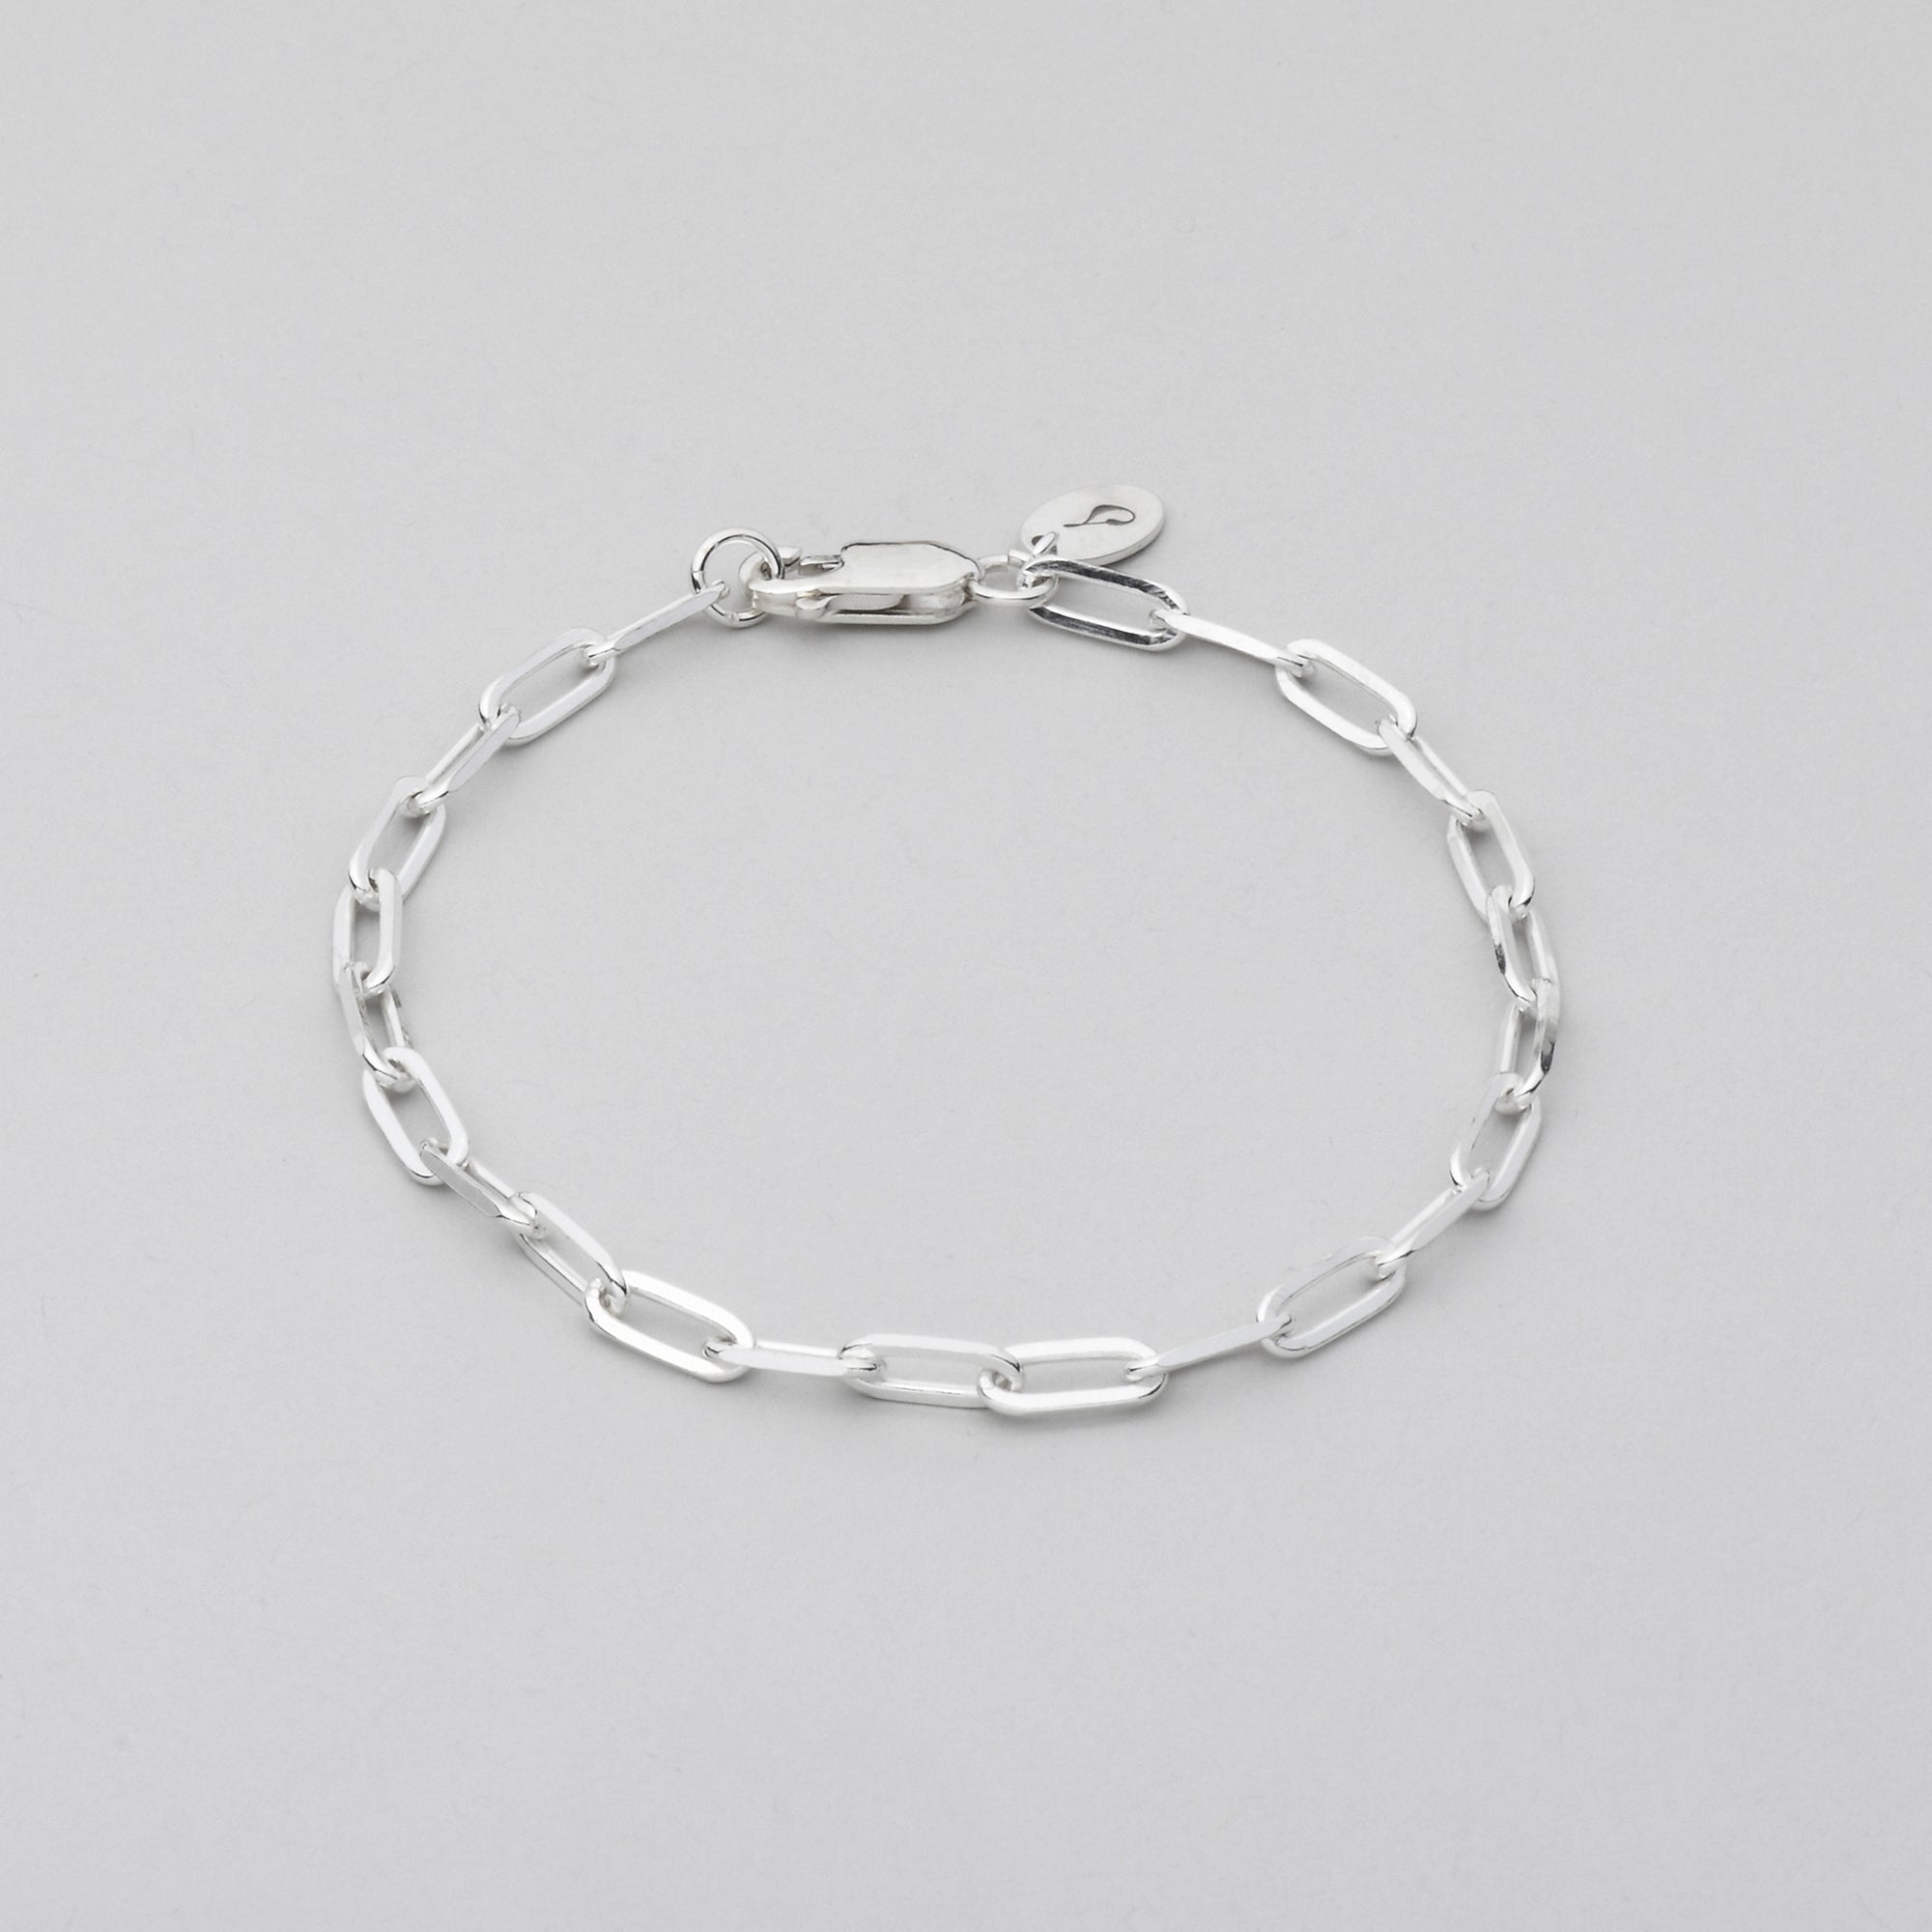 sturdy 9 mm links sterling silver bracelet on grey background